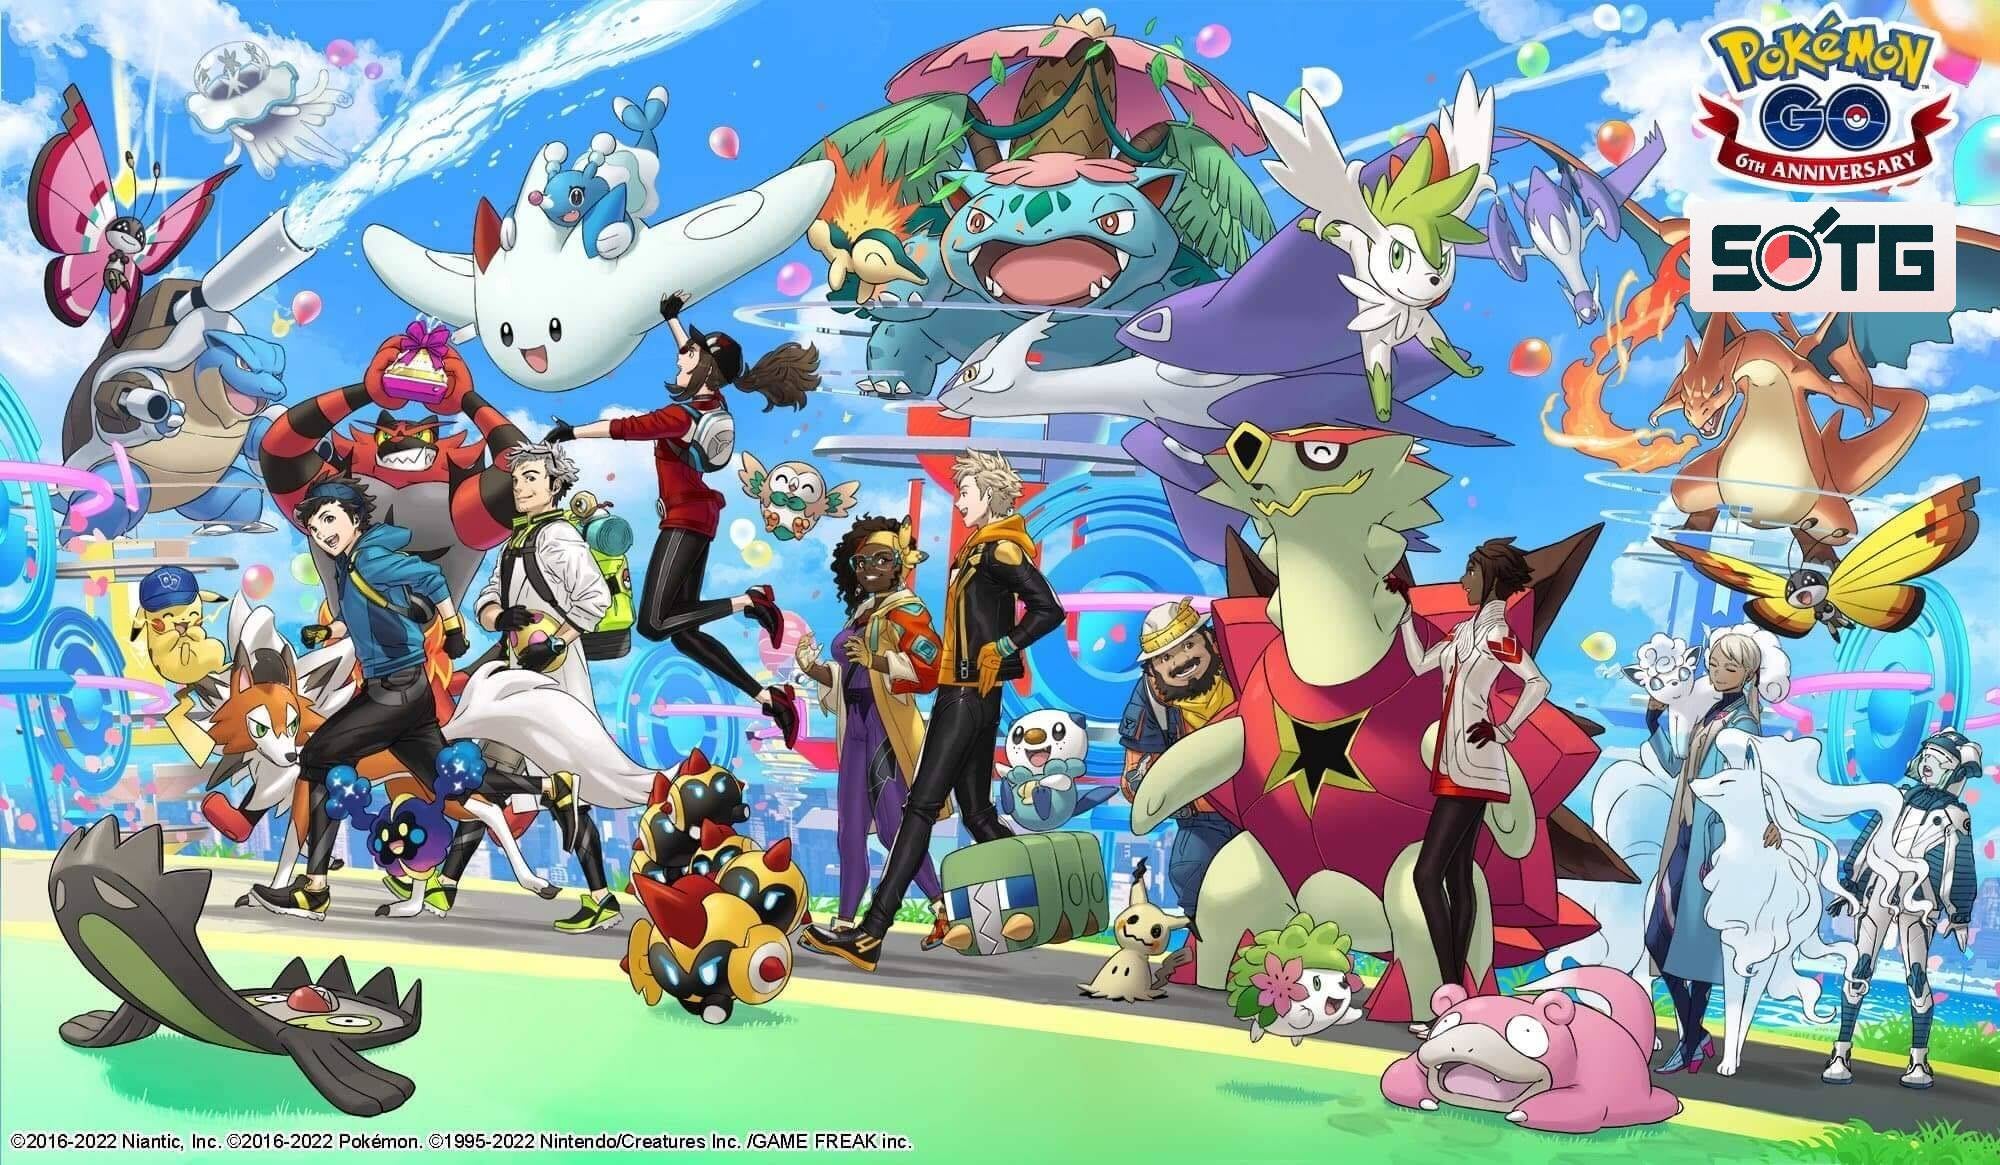 Image for Pokémon Go - the phenomenon that's now a wonderful routine